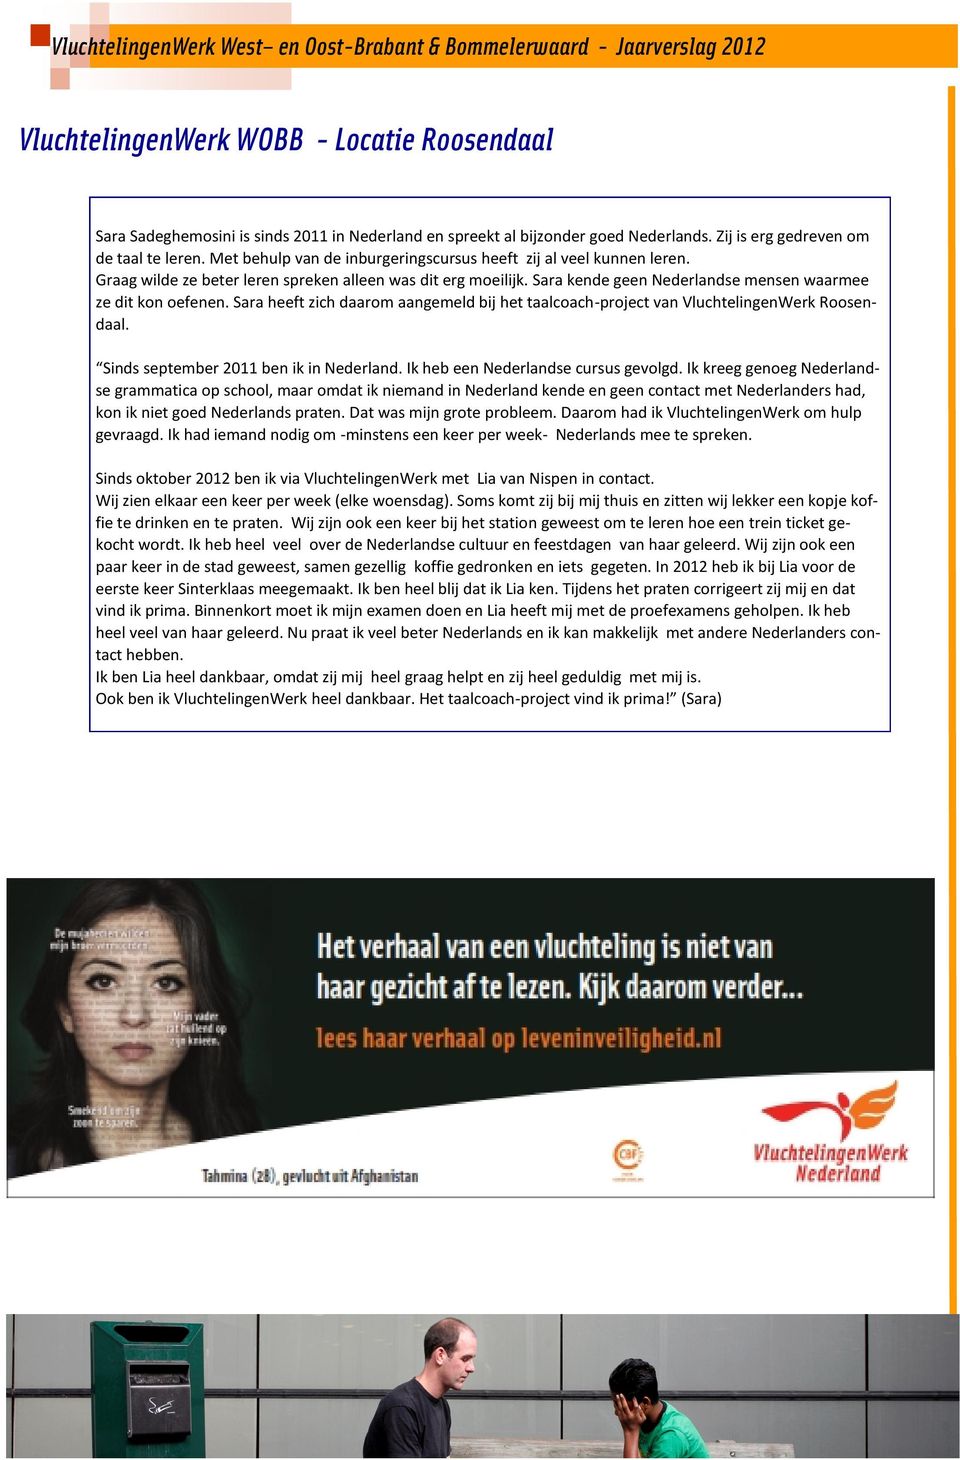 Sara heeft zich daarom aangemeld bij het taalcoach-project van VluchtelingenWerk Roosendaal. Sinds september 2011 ben ik in Nederland. Ik heb een Nederlandse cursus gevolgd.